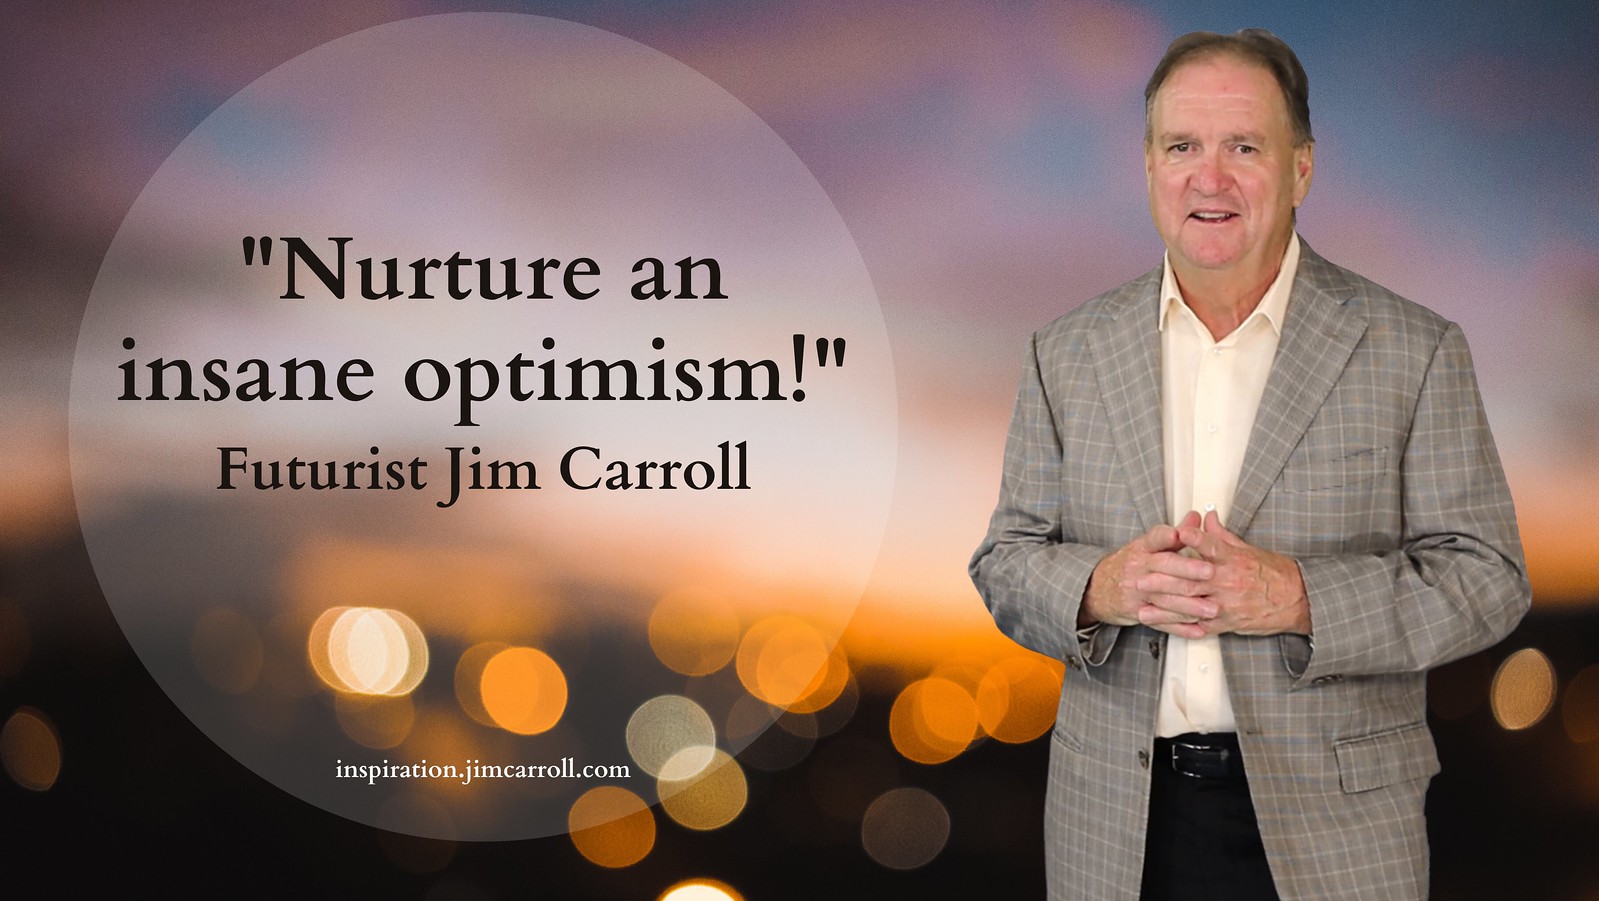 "Nurture an insane optimism!" - Futurist Jim Carroll